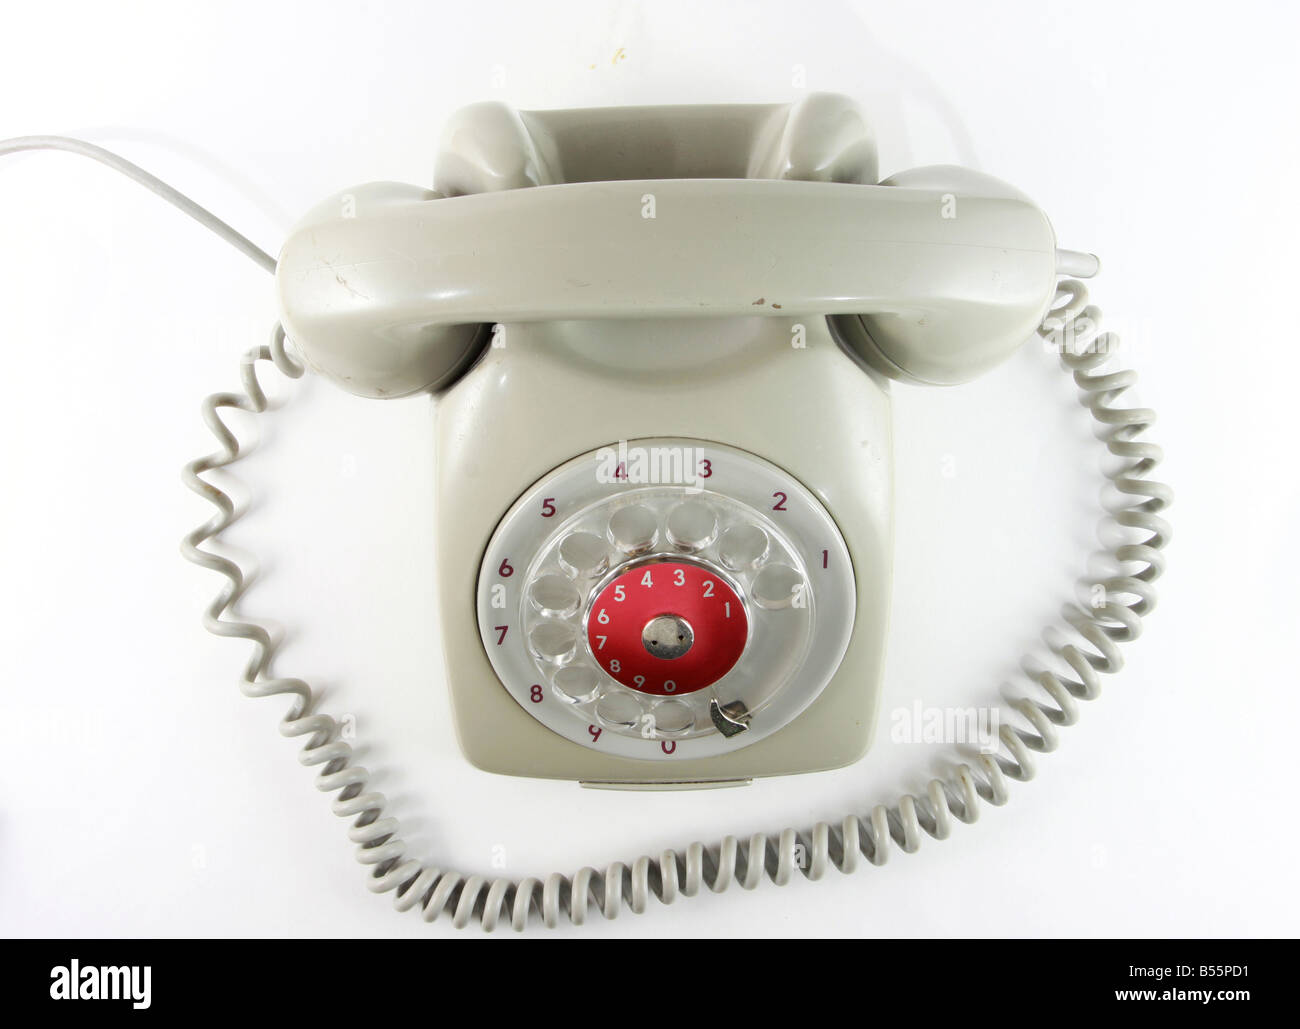 Vecchio analogico antico telefono grigio con manopola non digitale Foto Stock